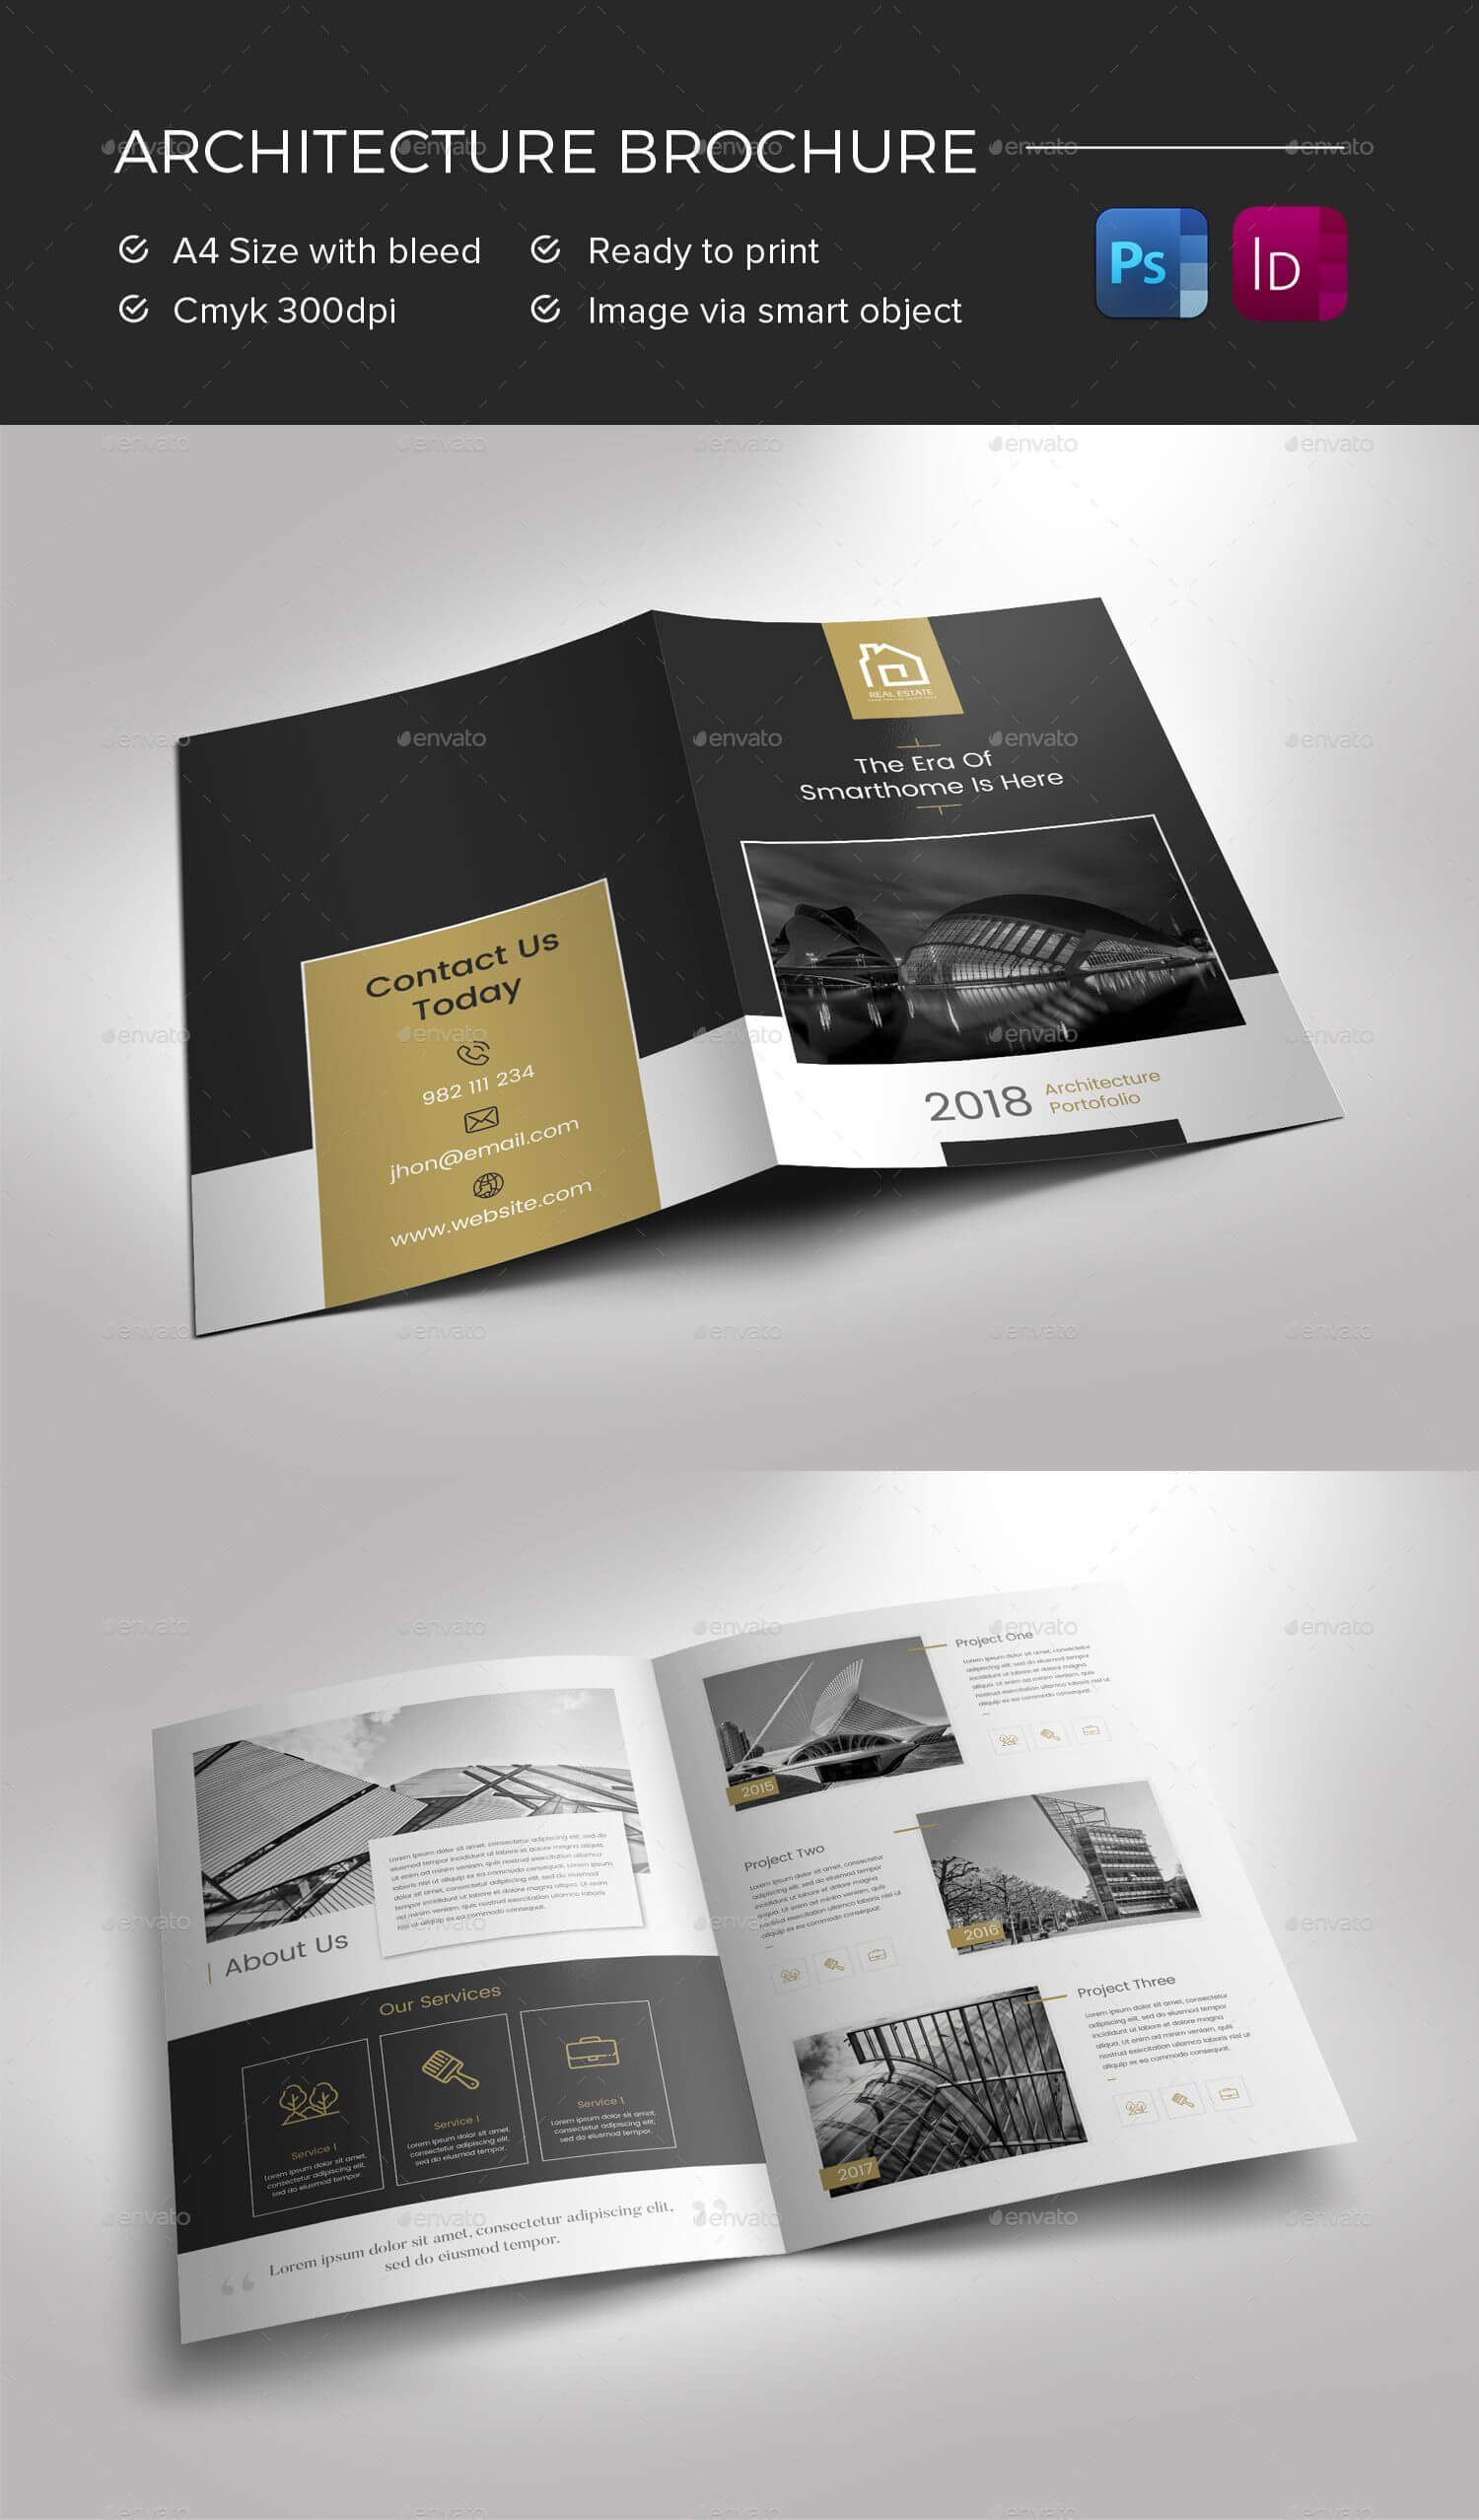 Architecture Brochure Preview - Graphicriver | Brochure Inside Architecture Brochure Templates Free Download